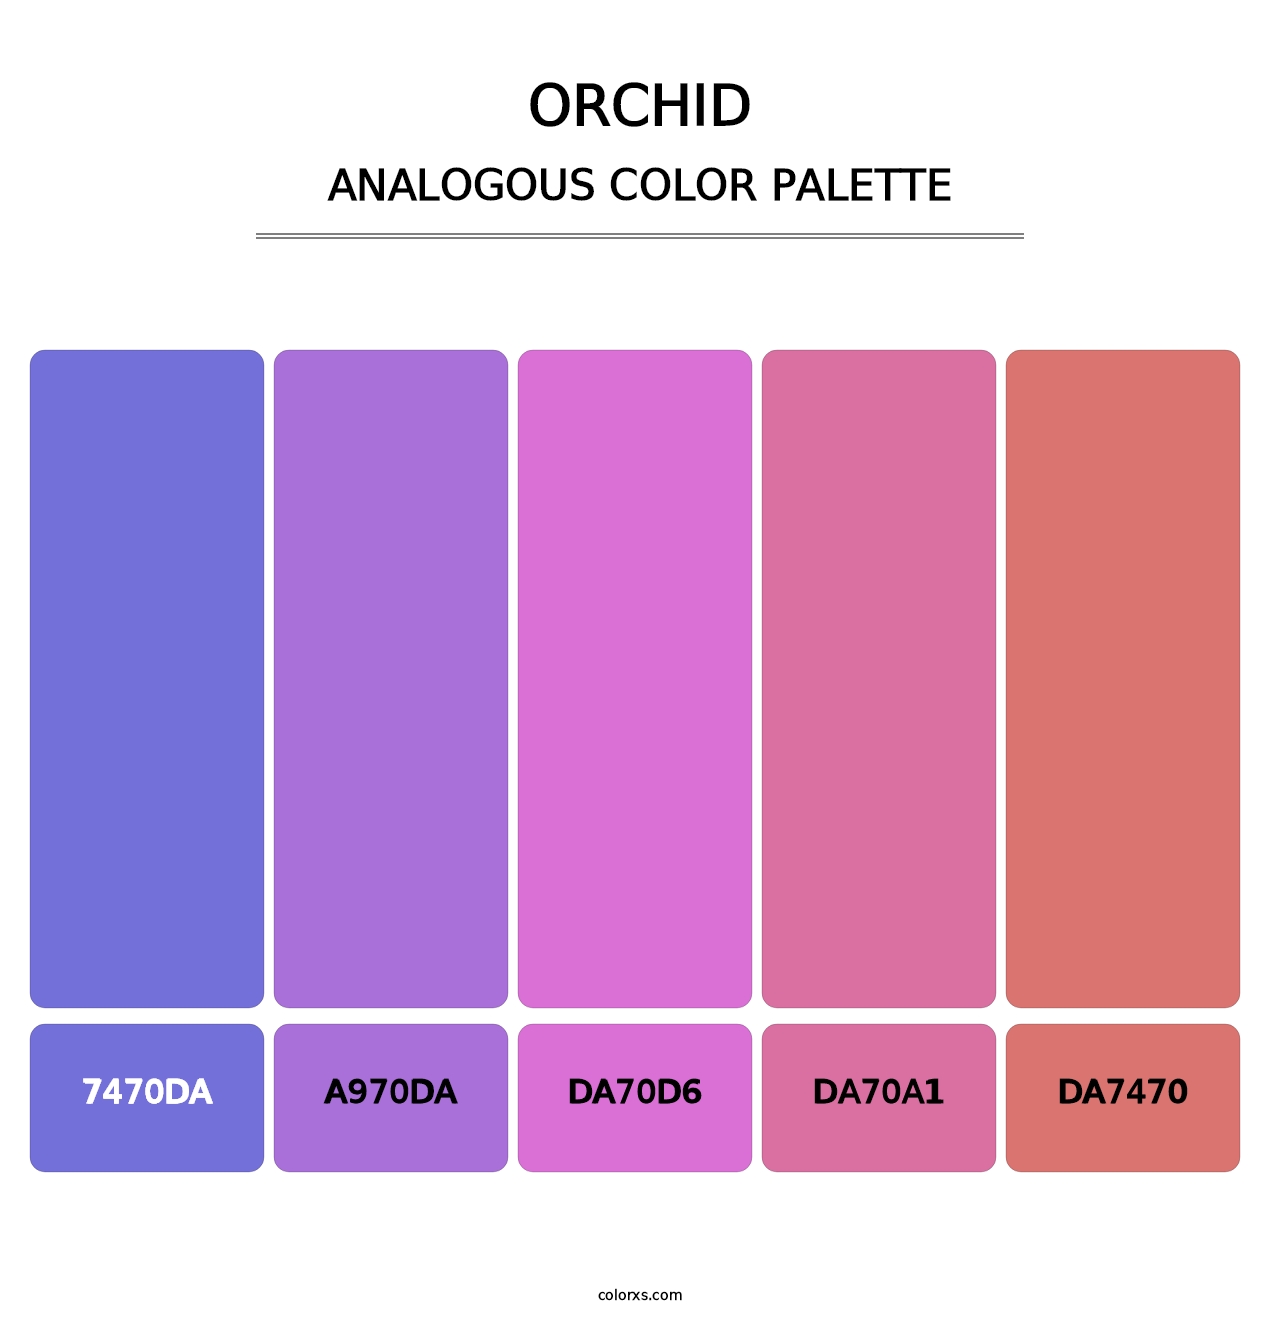 Orchid - Analogous Color Palette